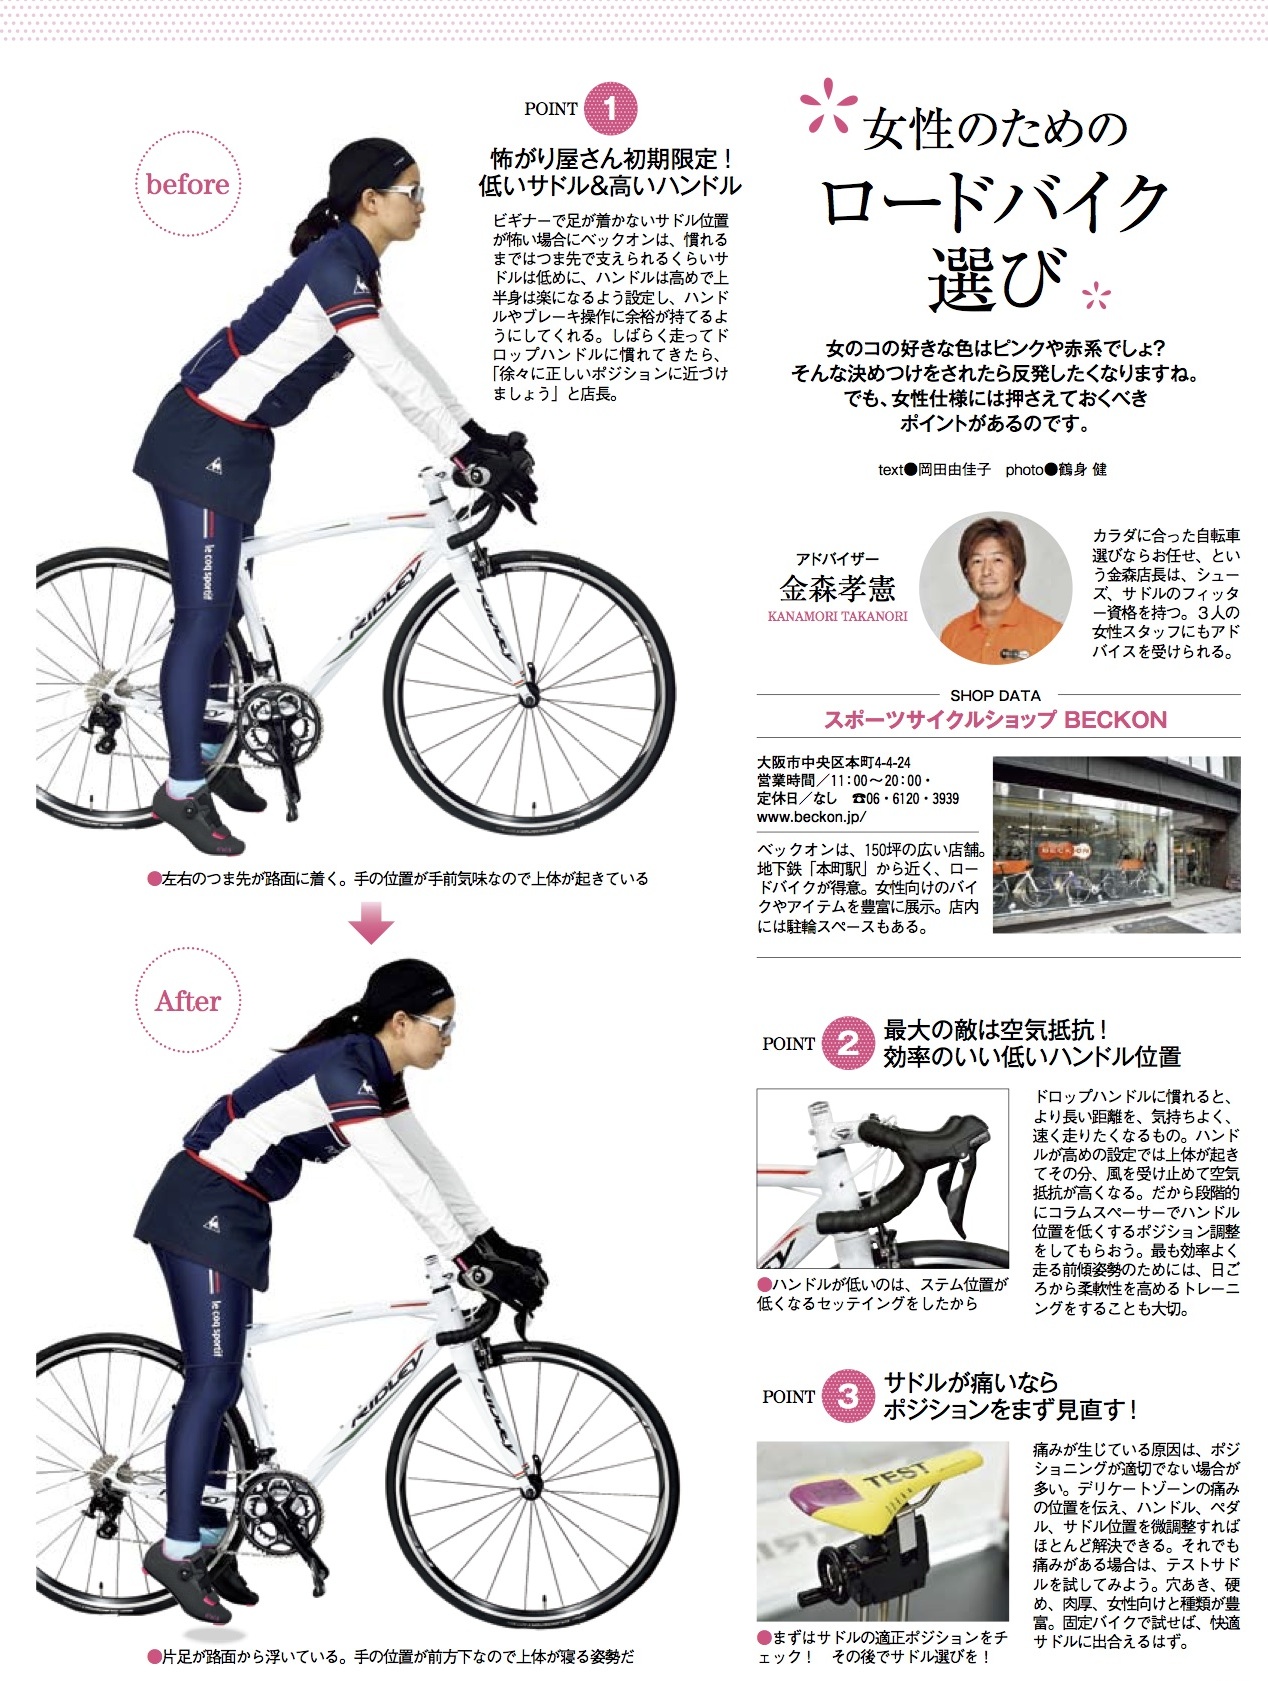 0 ゼロ から始める美しき ロードバイク女子 生活 サイクルスポーツの特集記事 トピックス サイクルスポーツ Jp